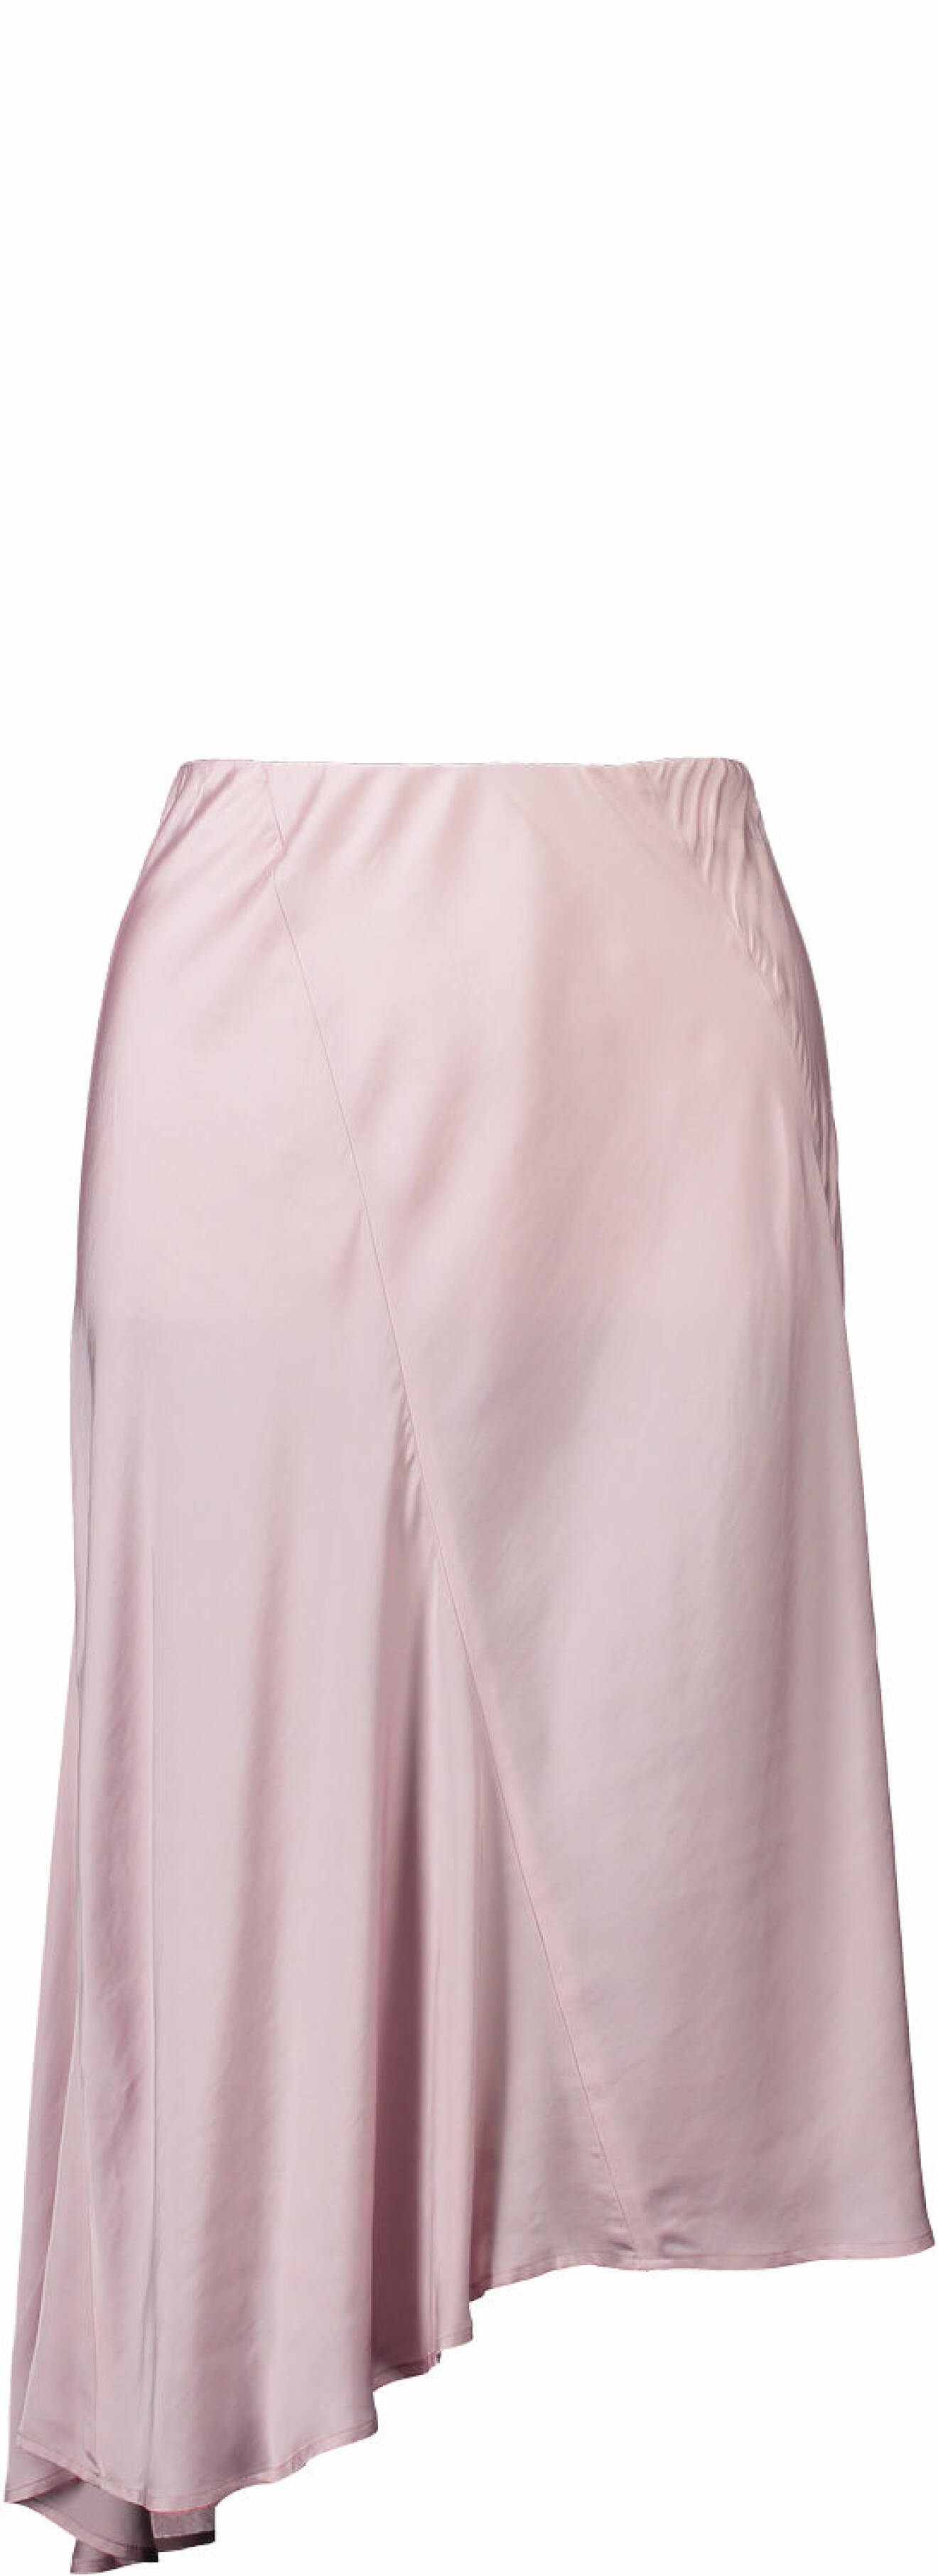 Rosa kjol i sidentyg